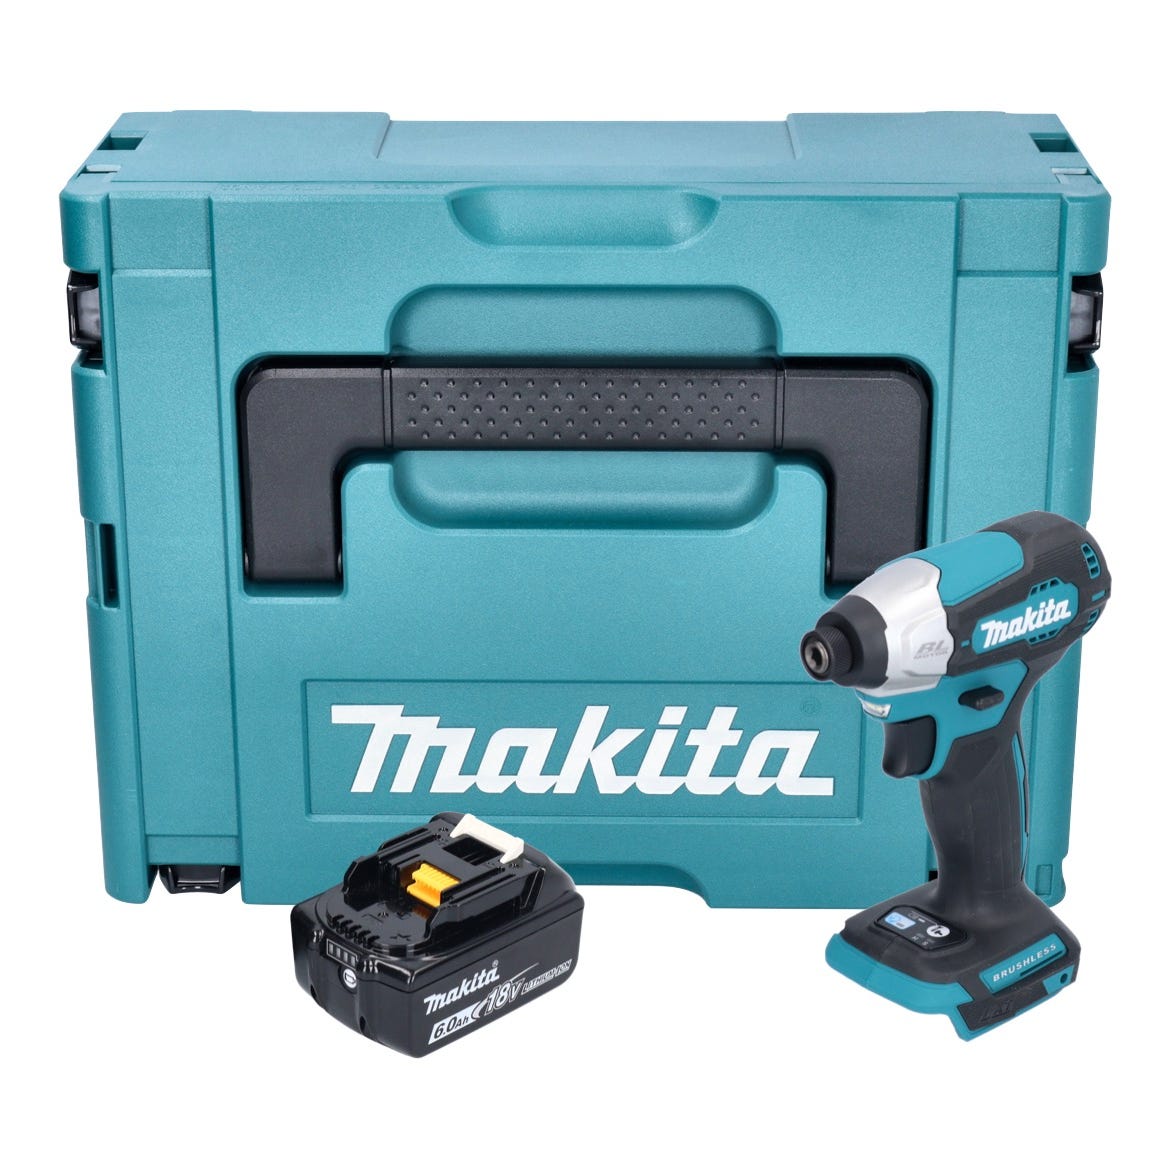 Makita DTD 157 G1J Clé à choc sans fil 18 V 140 Nm 1/4'' Brushless + 1x batterie 6,0 Ah + Makpac - sans chargeur 0